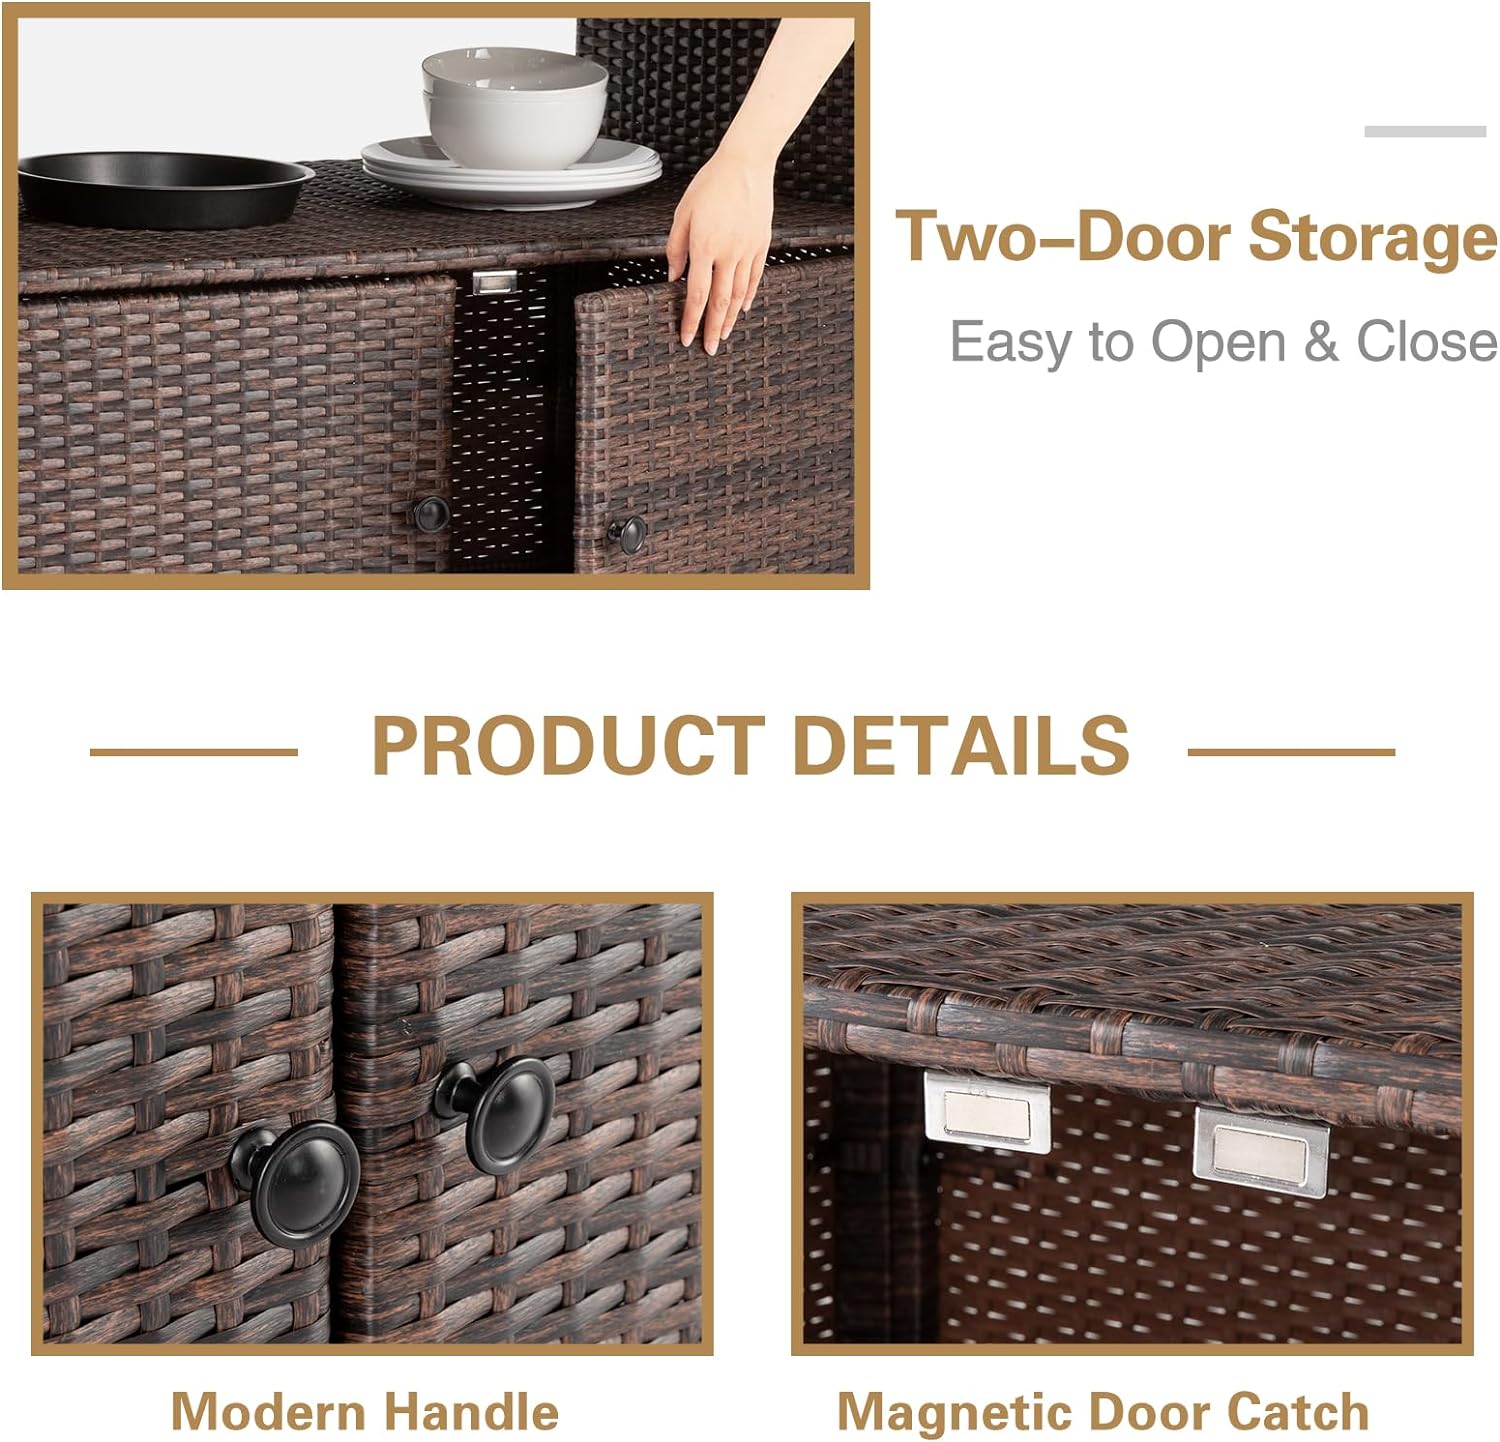 Eclife Outdoor Wicker Rattan Storage Cabinet with 2 Doors, Shelves & Polystyrene Top